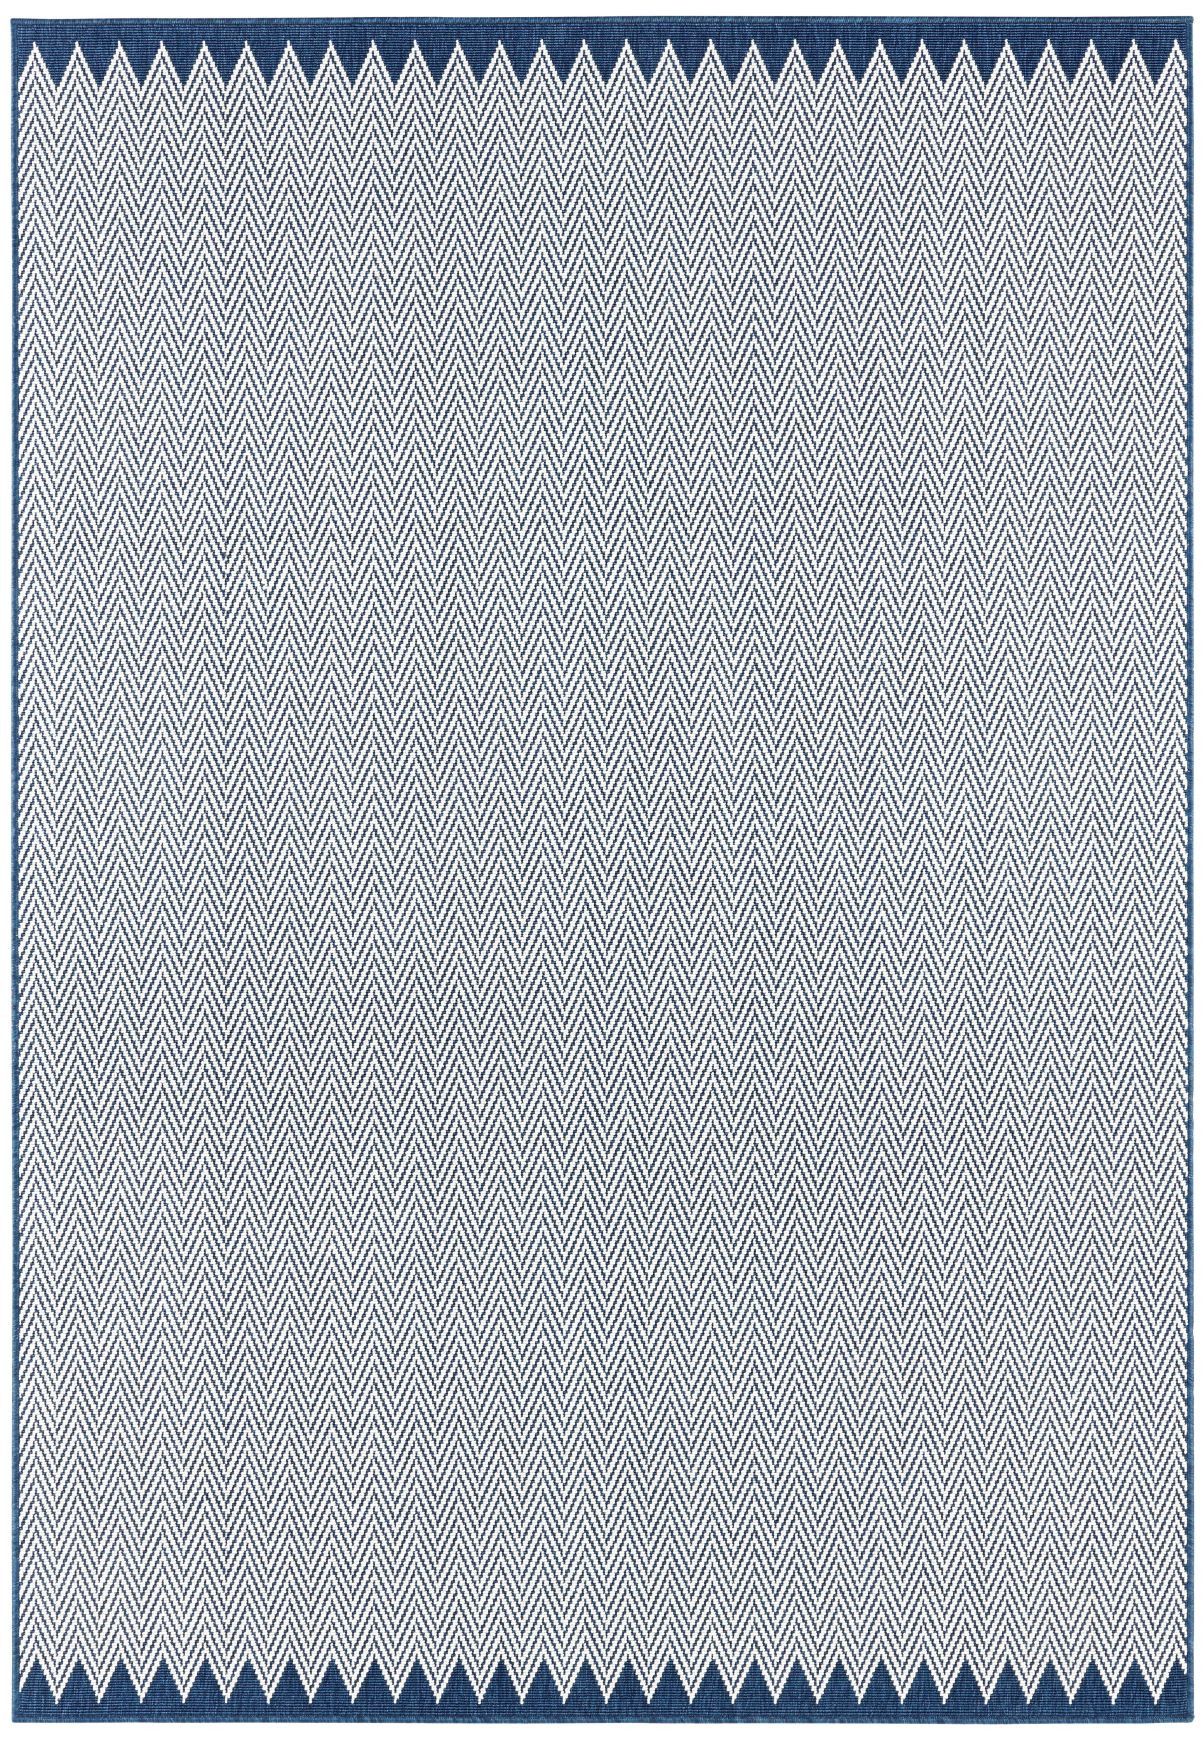 Mujkoberec Original AKCIA: 120x170 cm Kusový koberec Mujkoberec Original Karla 103286 Darkblue Creme - 120x170 cm